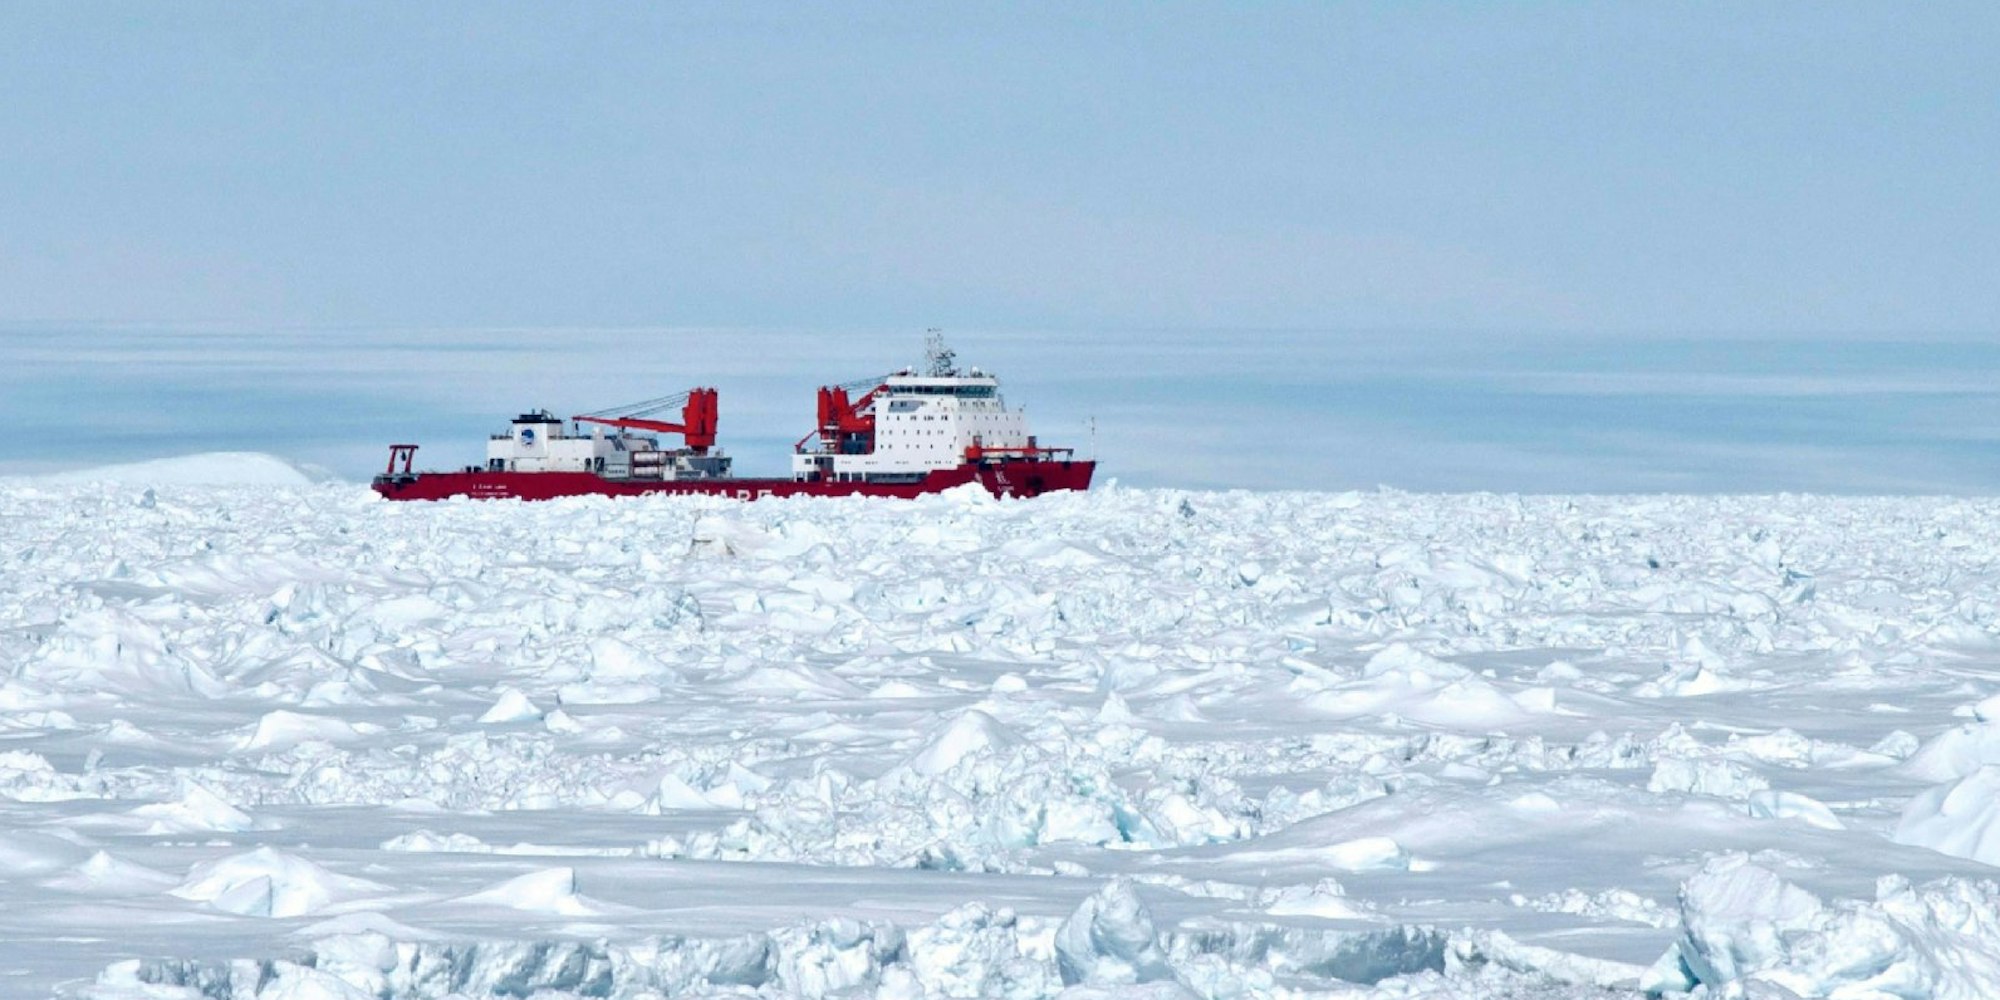 Der chinesische Eisbrecher Xue Long (Snow Dragon) steckt nun selbst fest, nachdem er Crew, Forscher und Touristen der MV Akademik Shokalskiy aus dem Polareis gerettet hat.